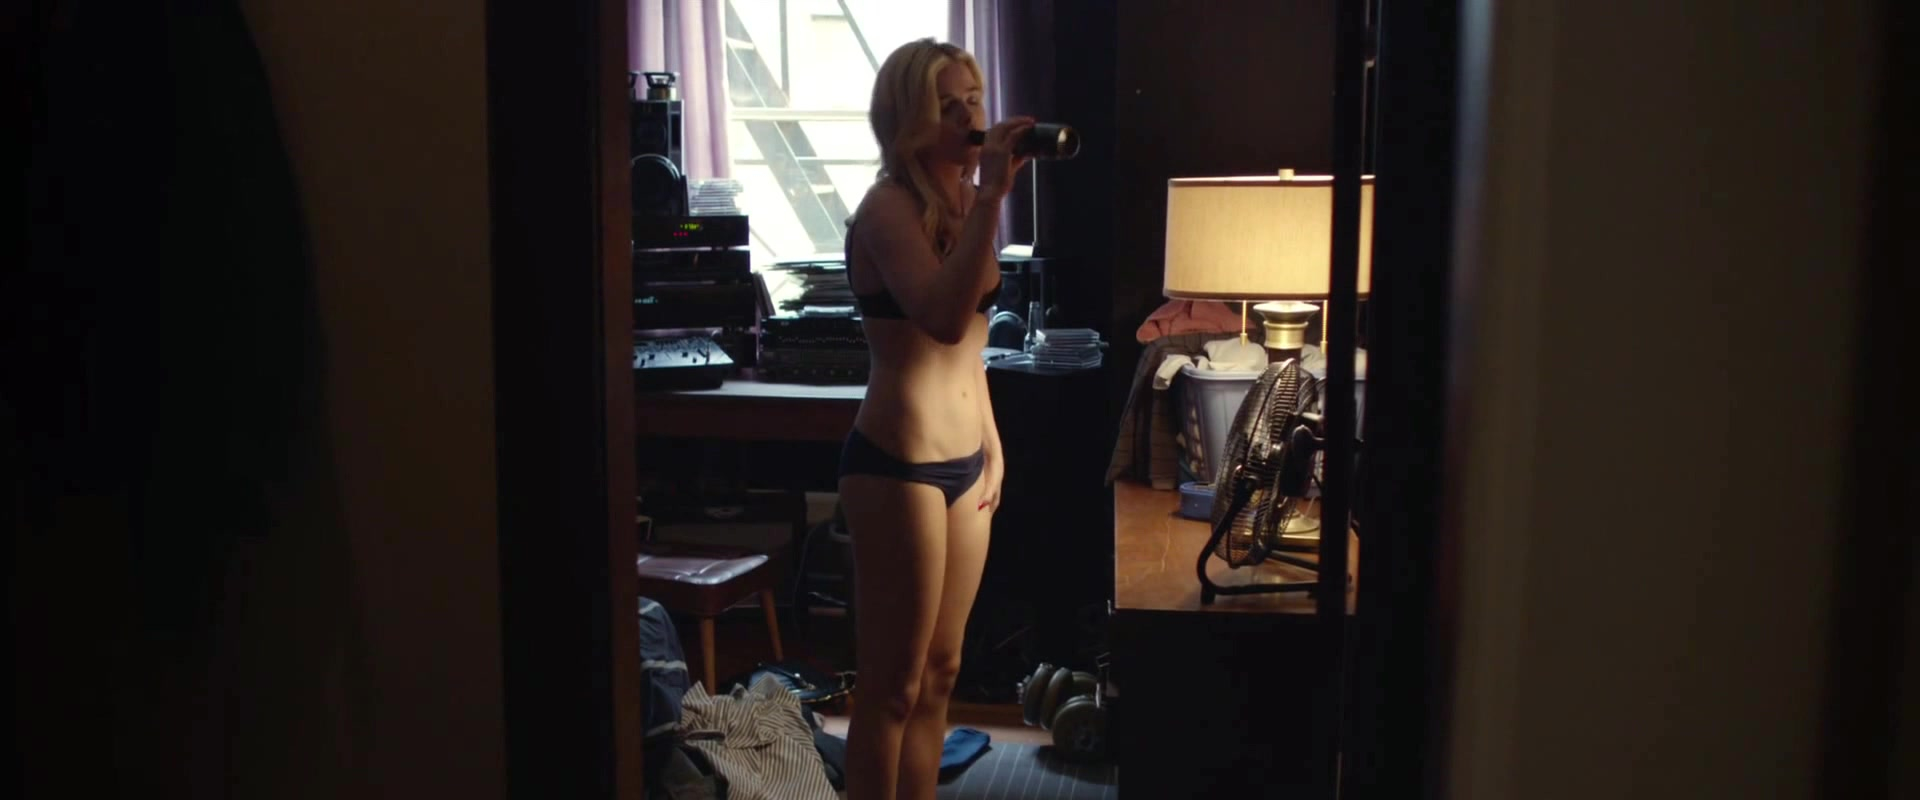 Nude Video Celebs Chloe Grace Moretz Sexy Brain On Fire 2016